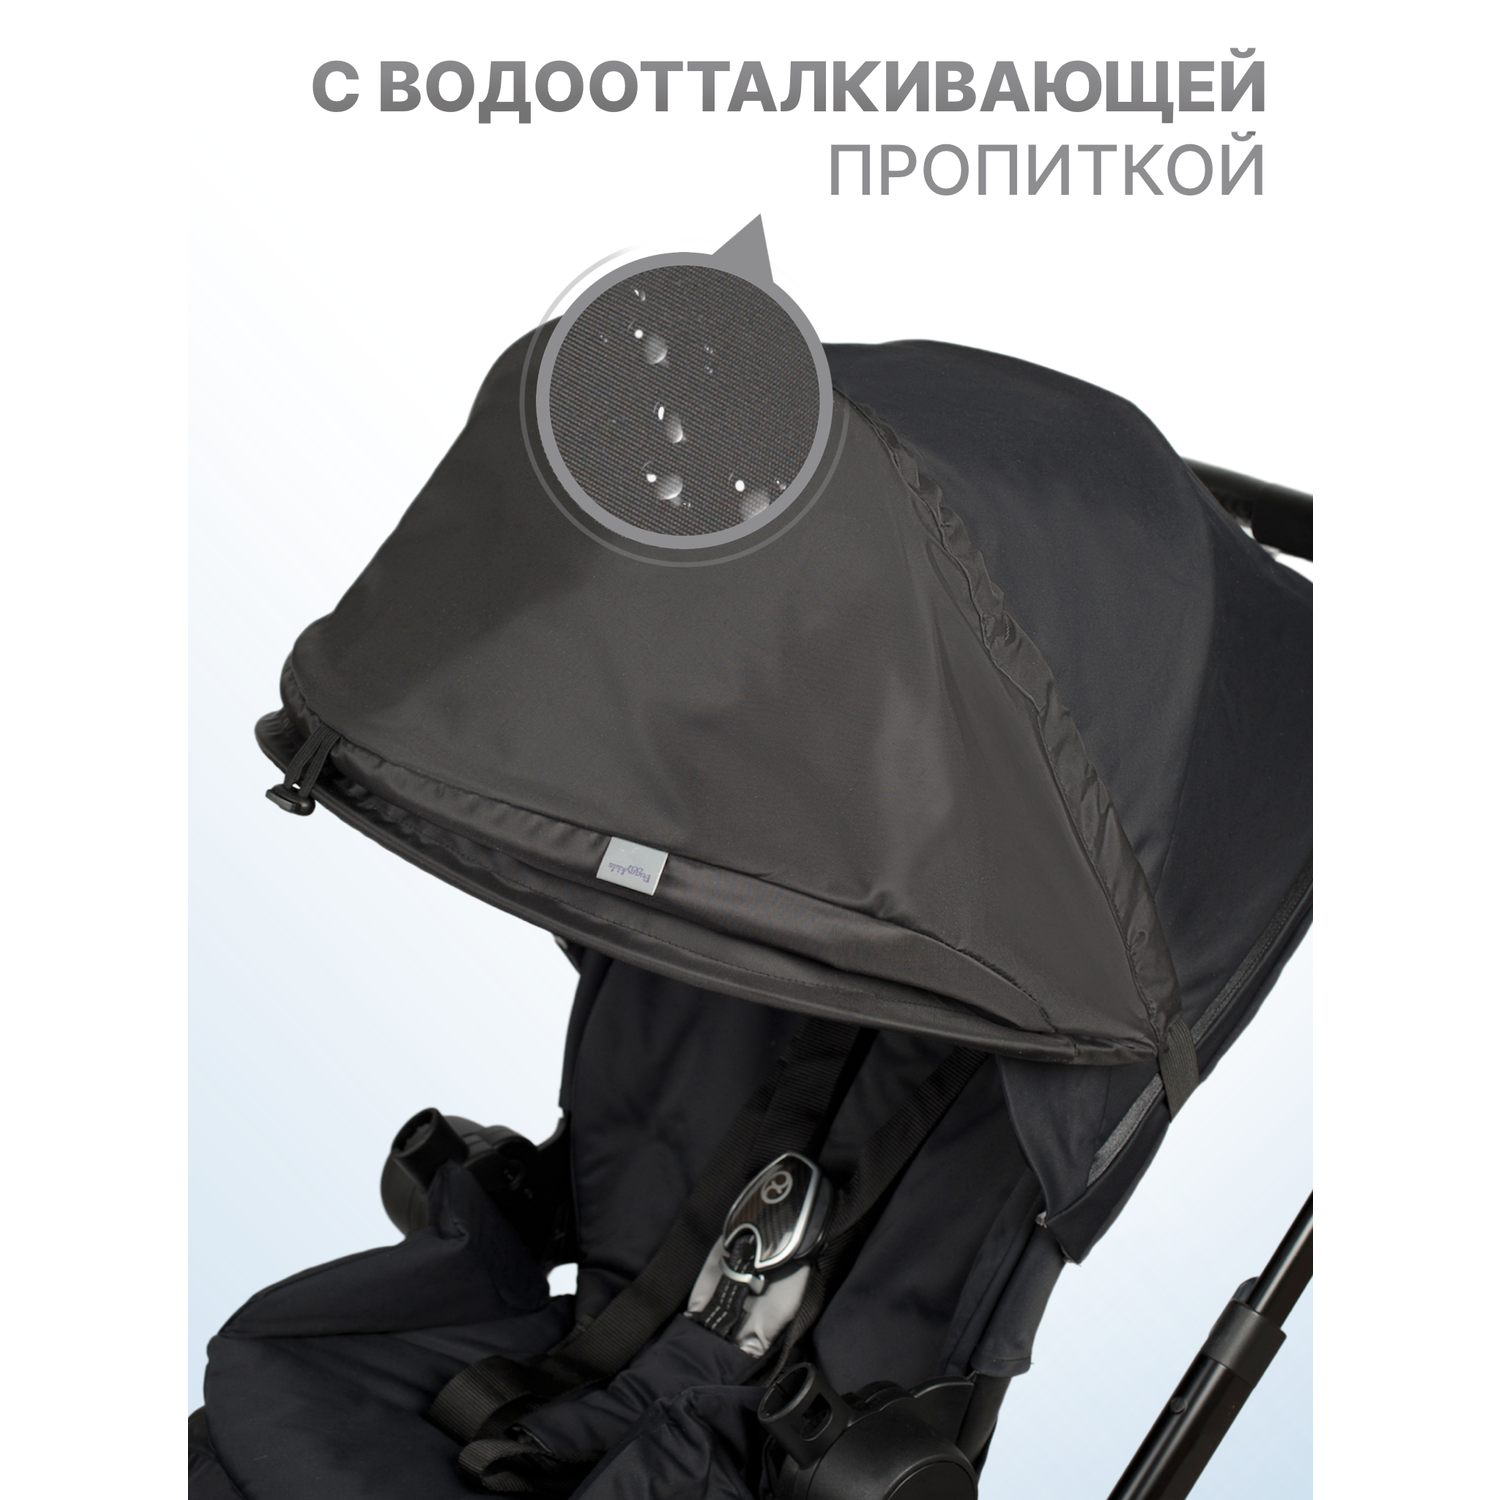 Козырек для коляски Buggykids Черный 1К/000 - фото 3